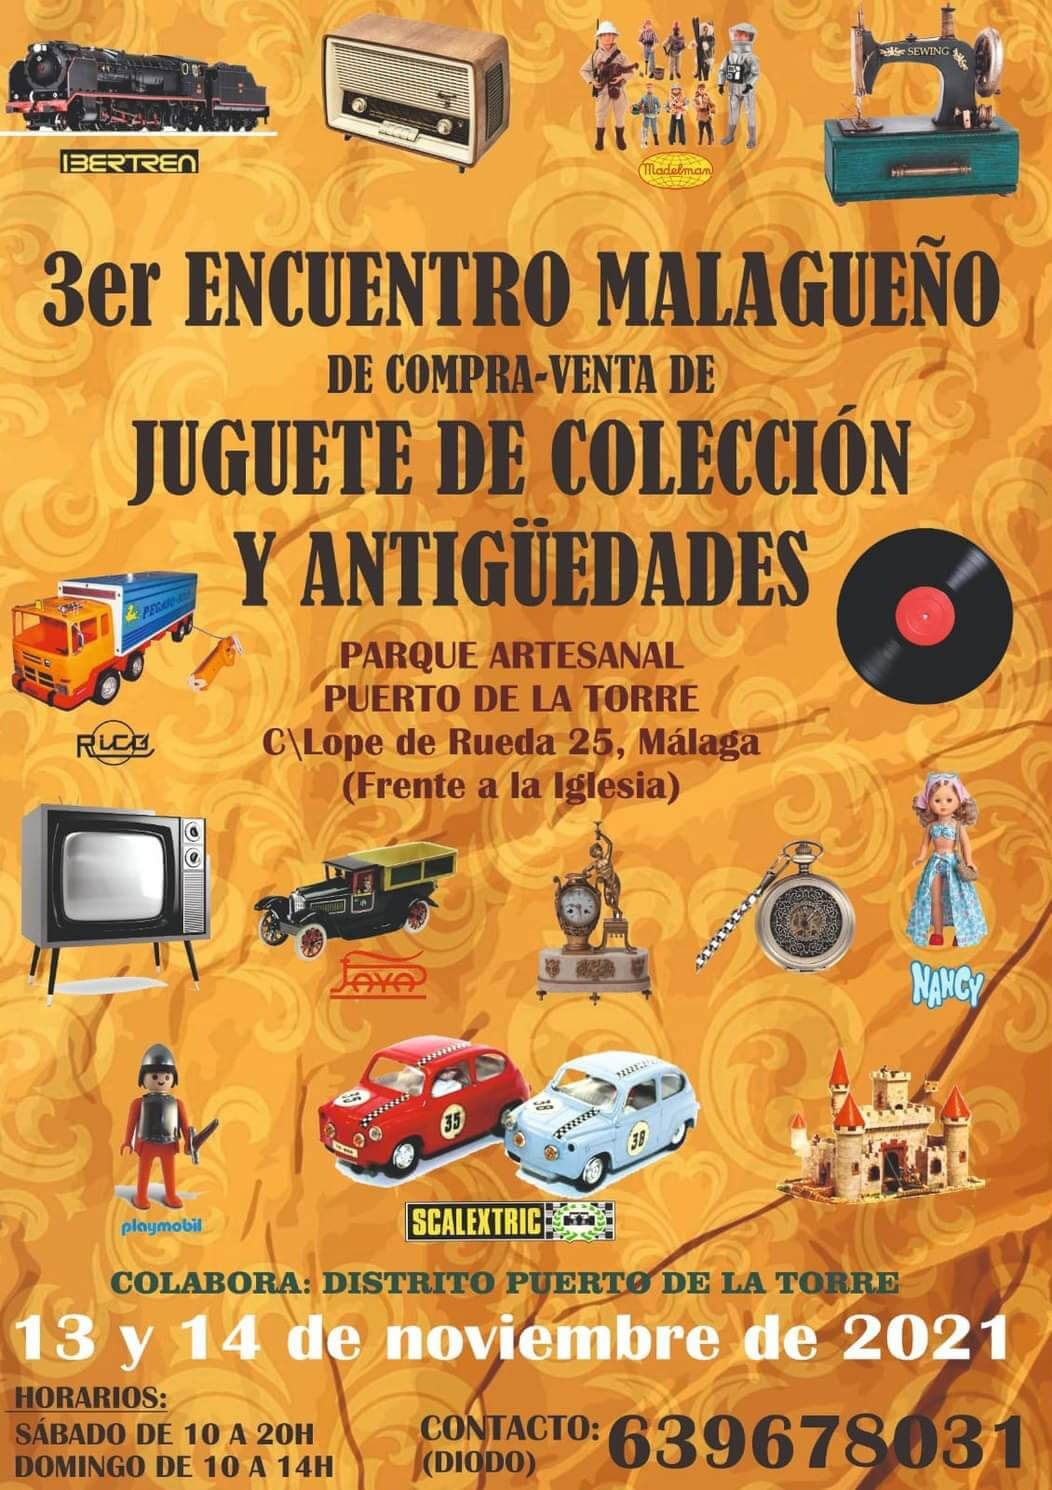 Tercer encuentro malagueño de compra-venta de juguetes de colección y antigüedades en Puerto de la torre, Málaga.